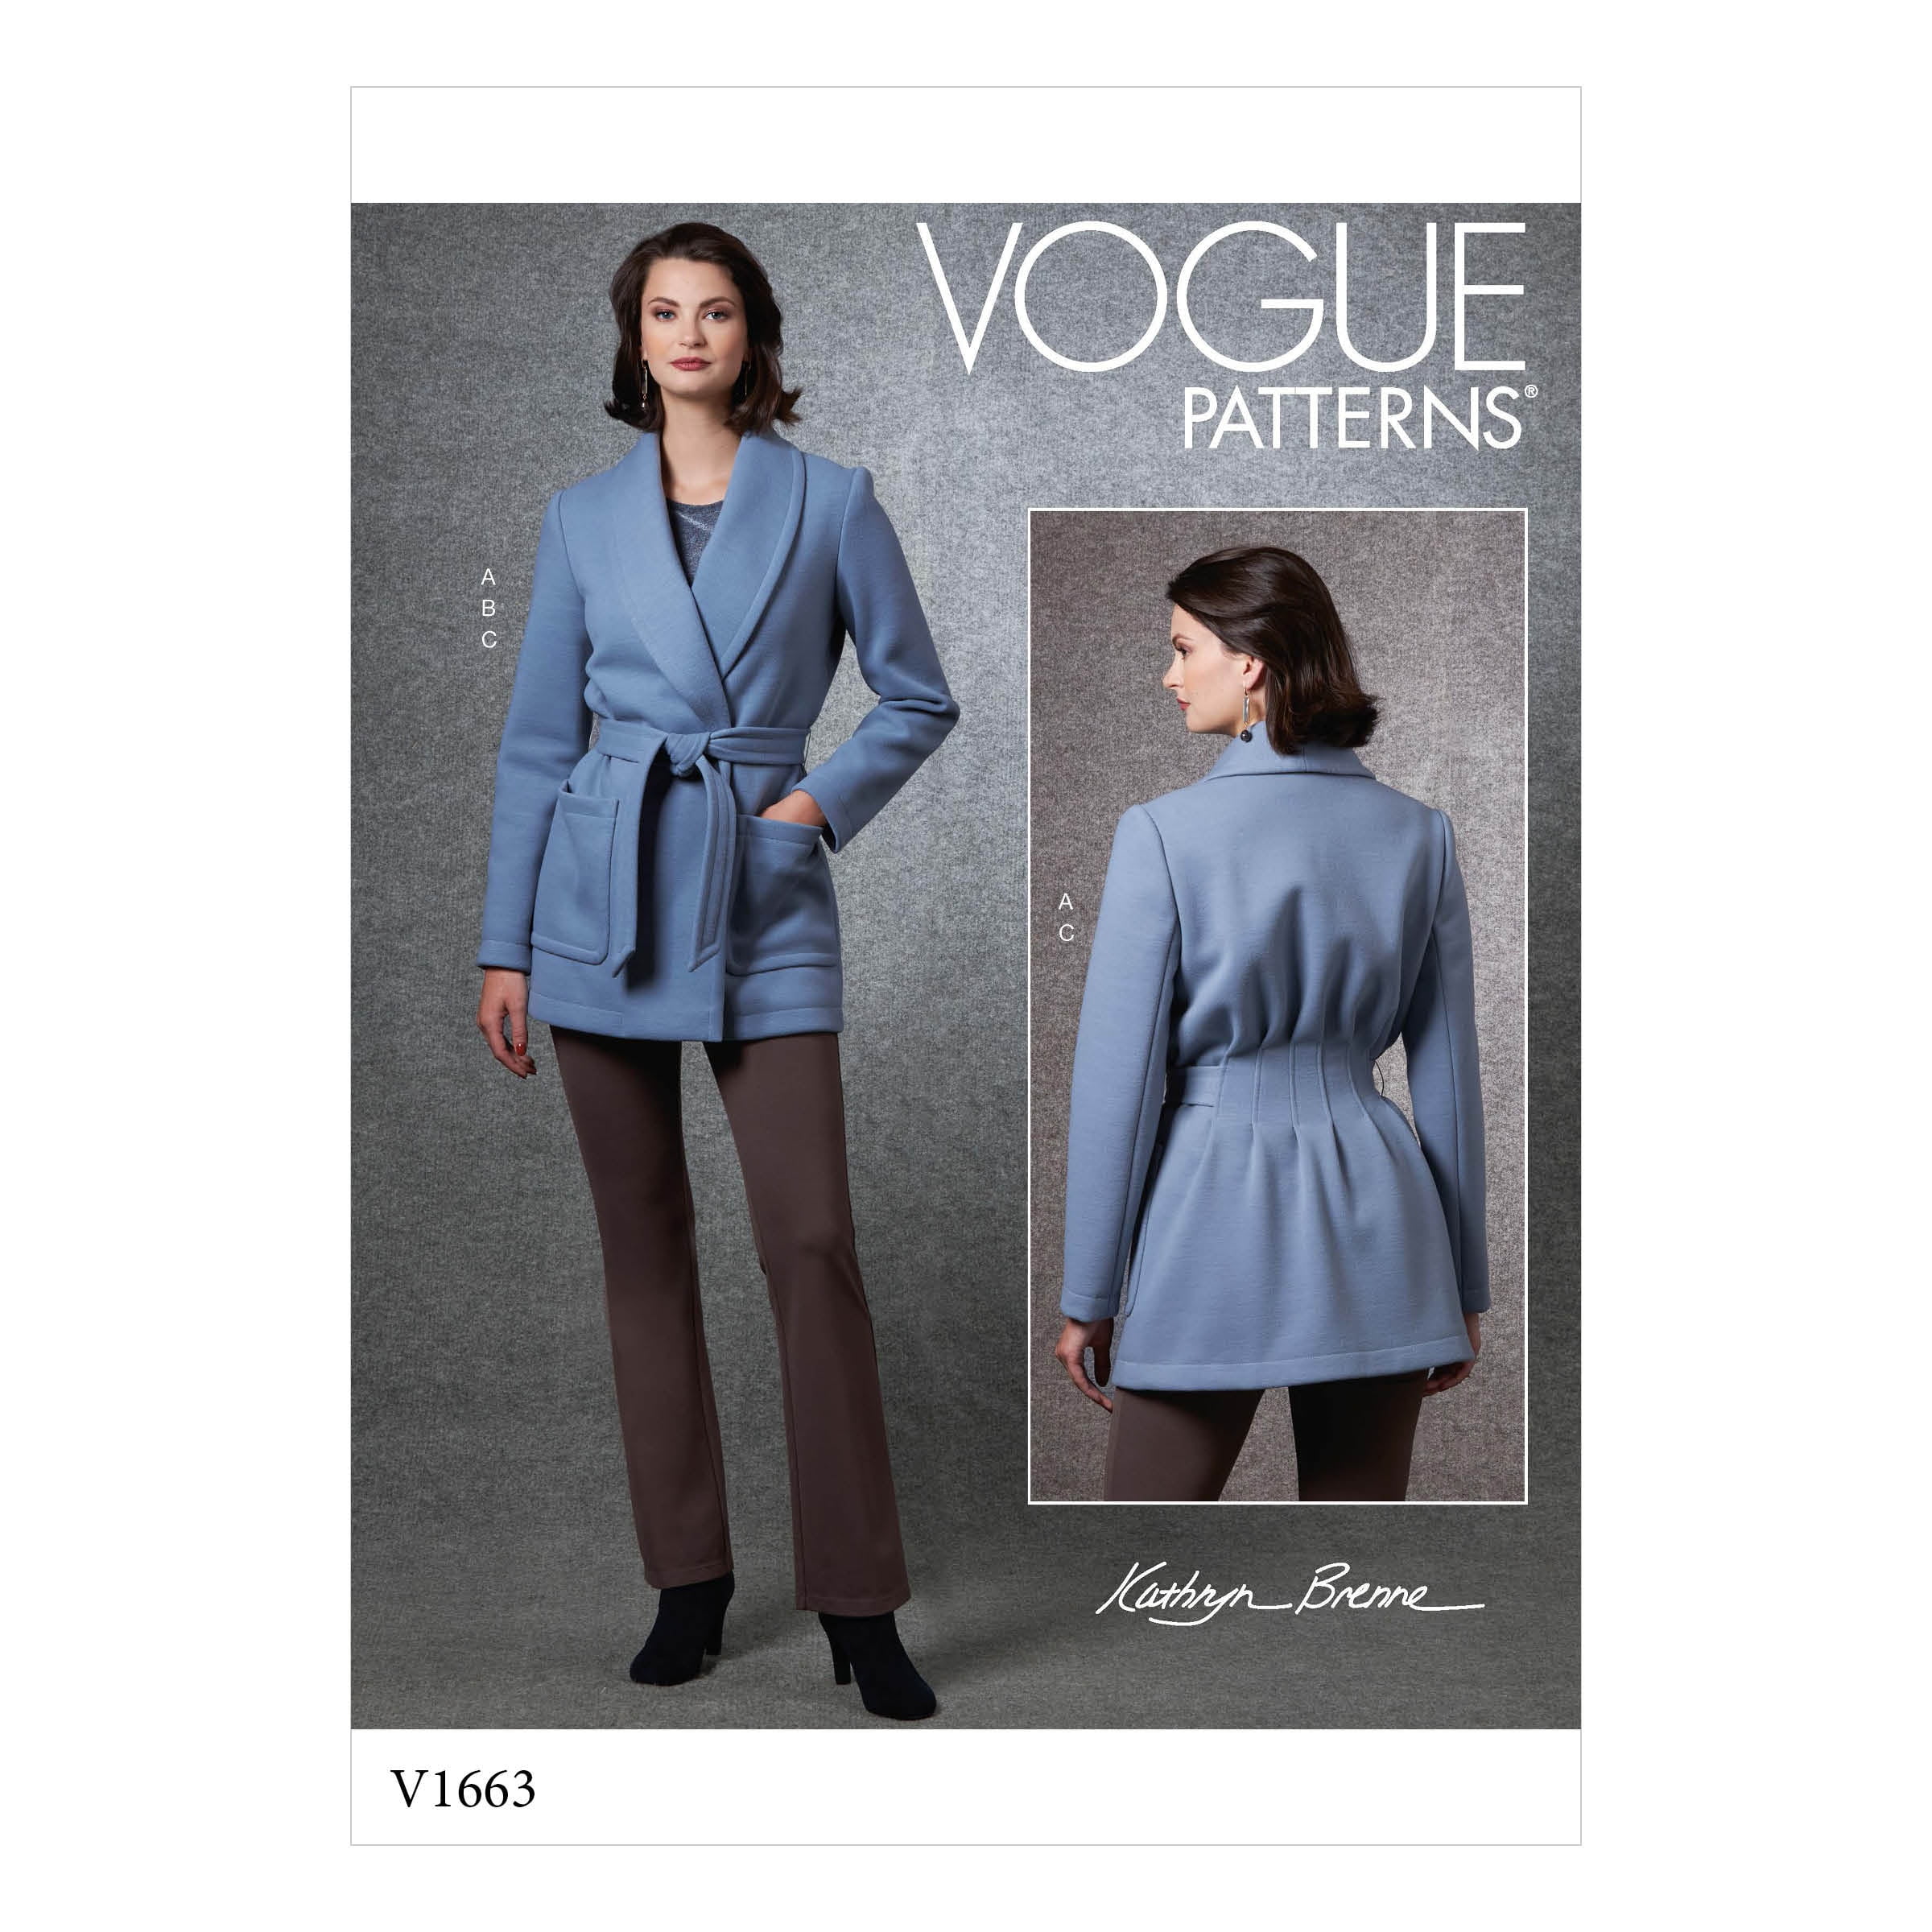 Vogue Patterns Pattern: Kathryn Brenne, Misses' Jacket, Top & Pants ...